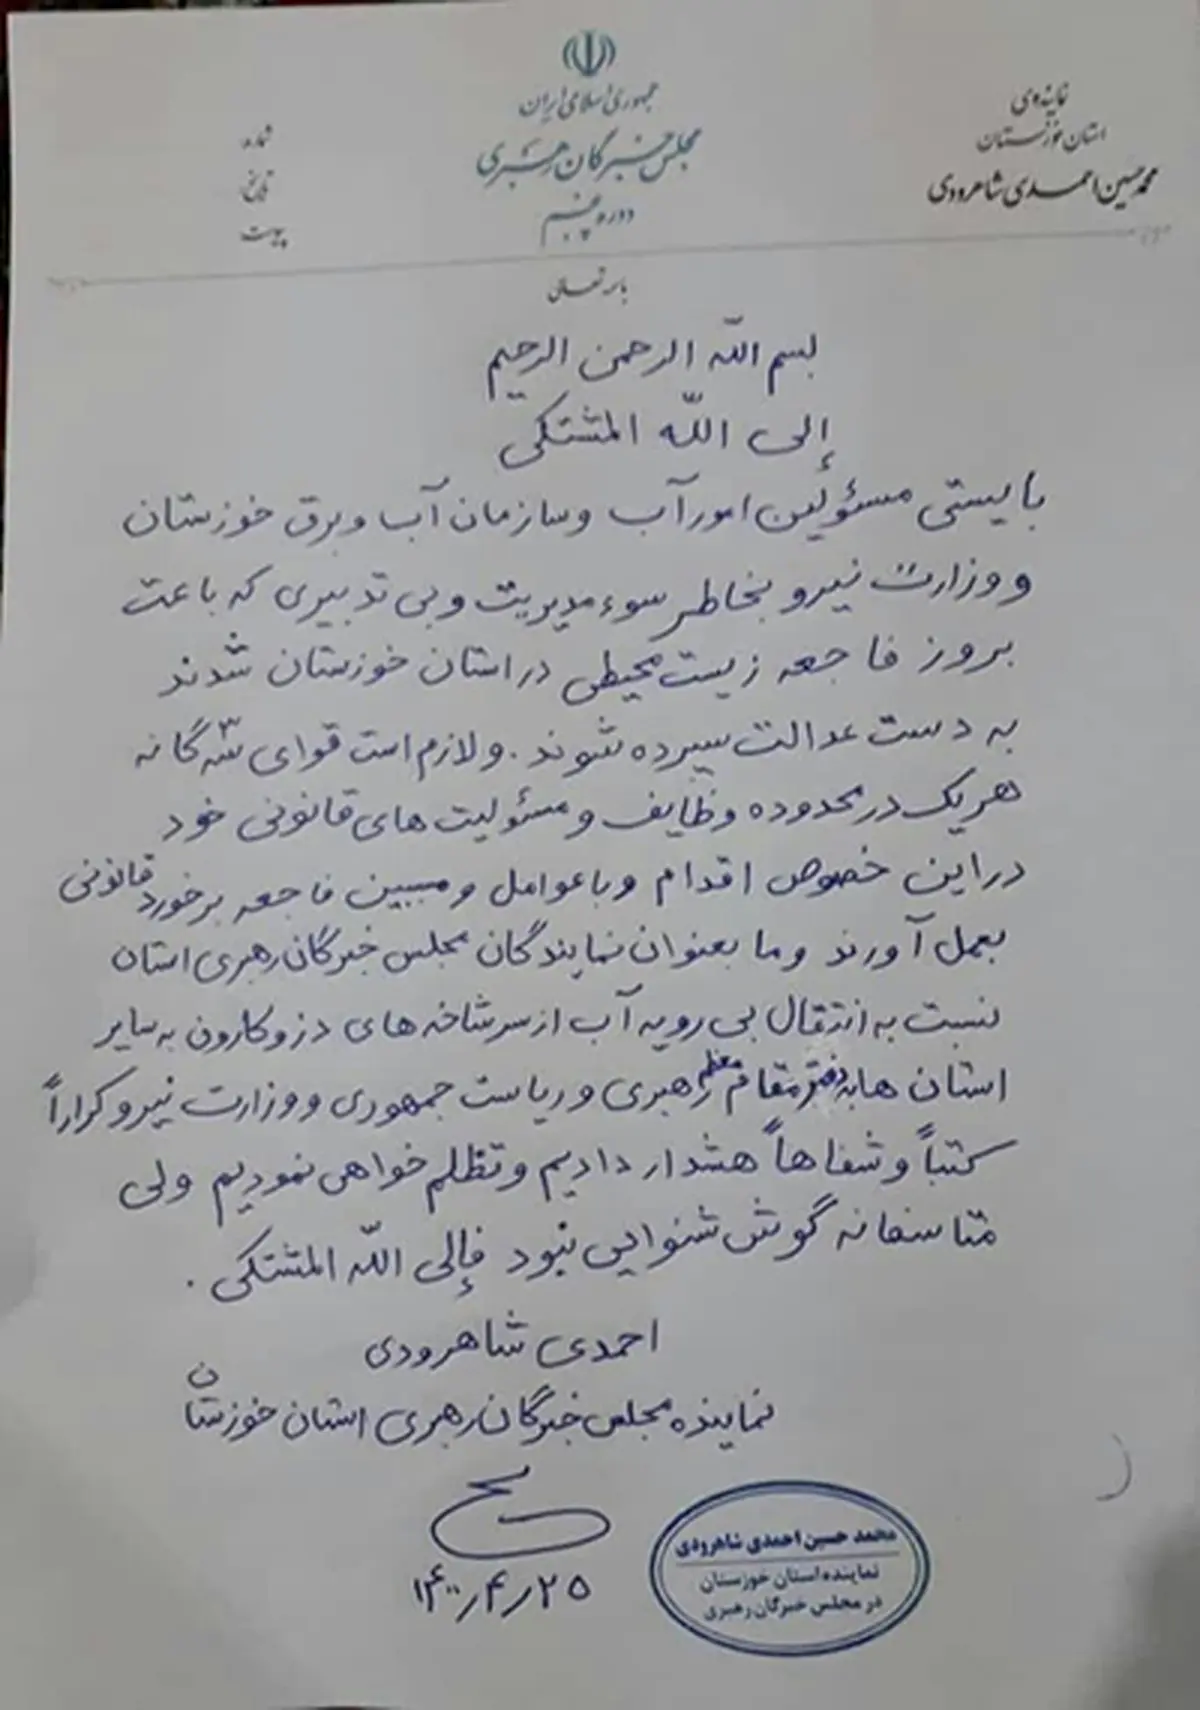 عضو مجلس خبرگان: مسئولانی که باعث بروز فاجعه زیست محیطی در خوزستان شدند به دست عدالت سپرده شوند